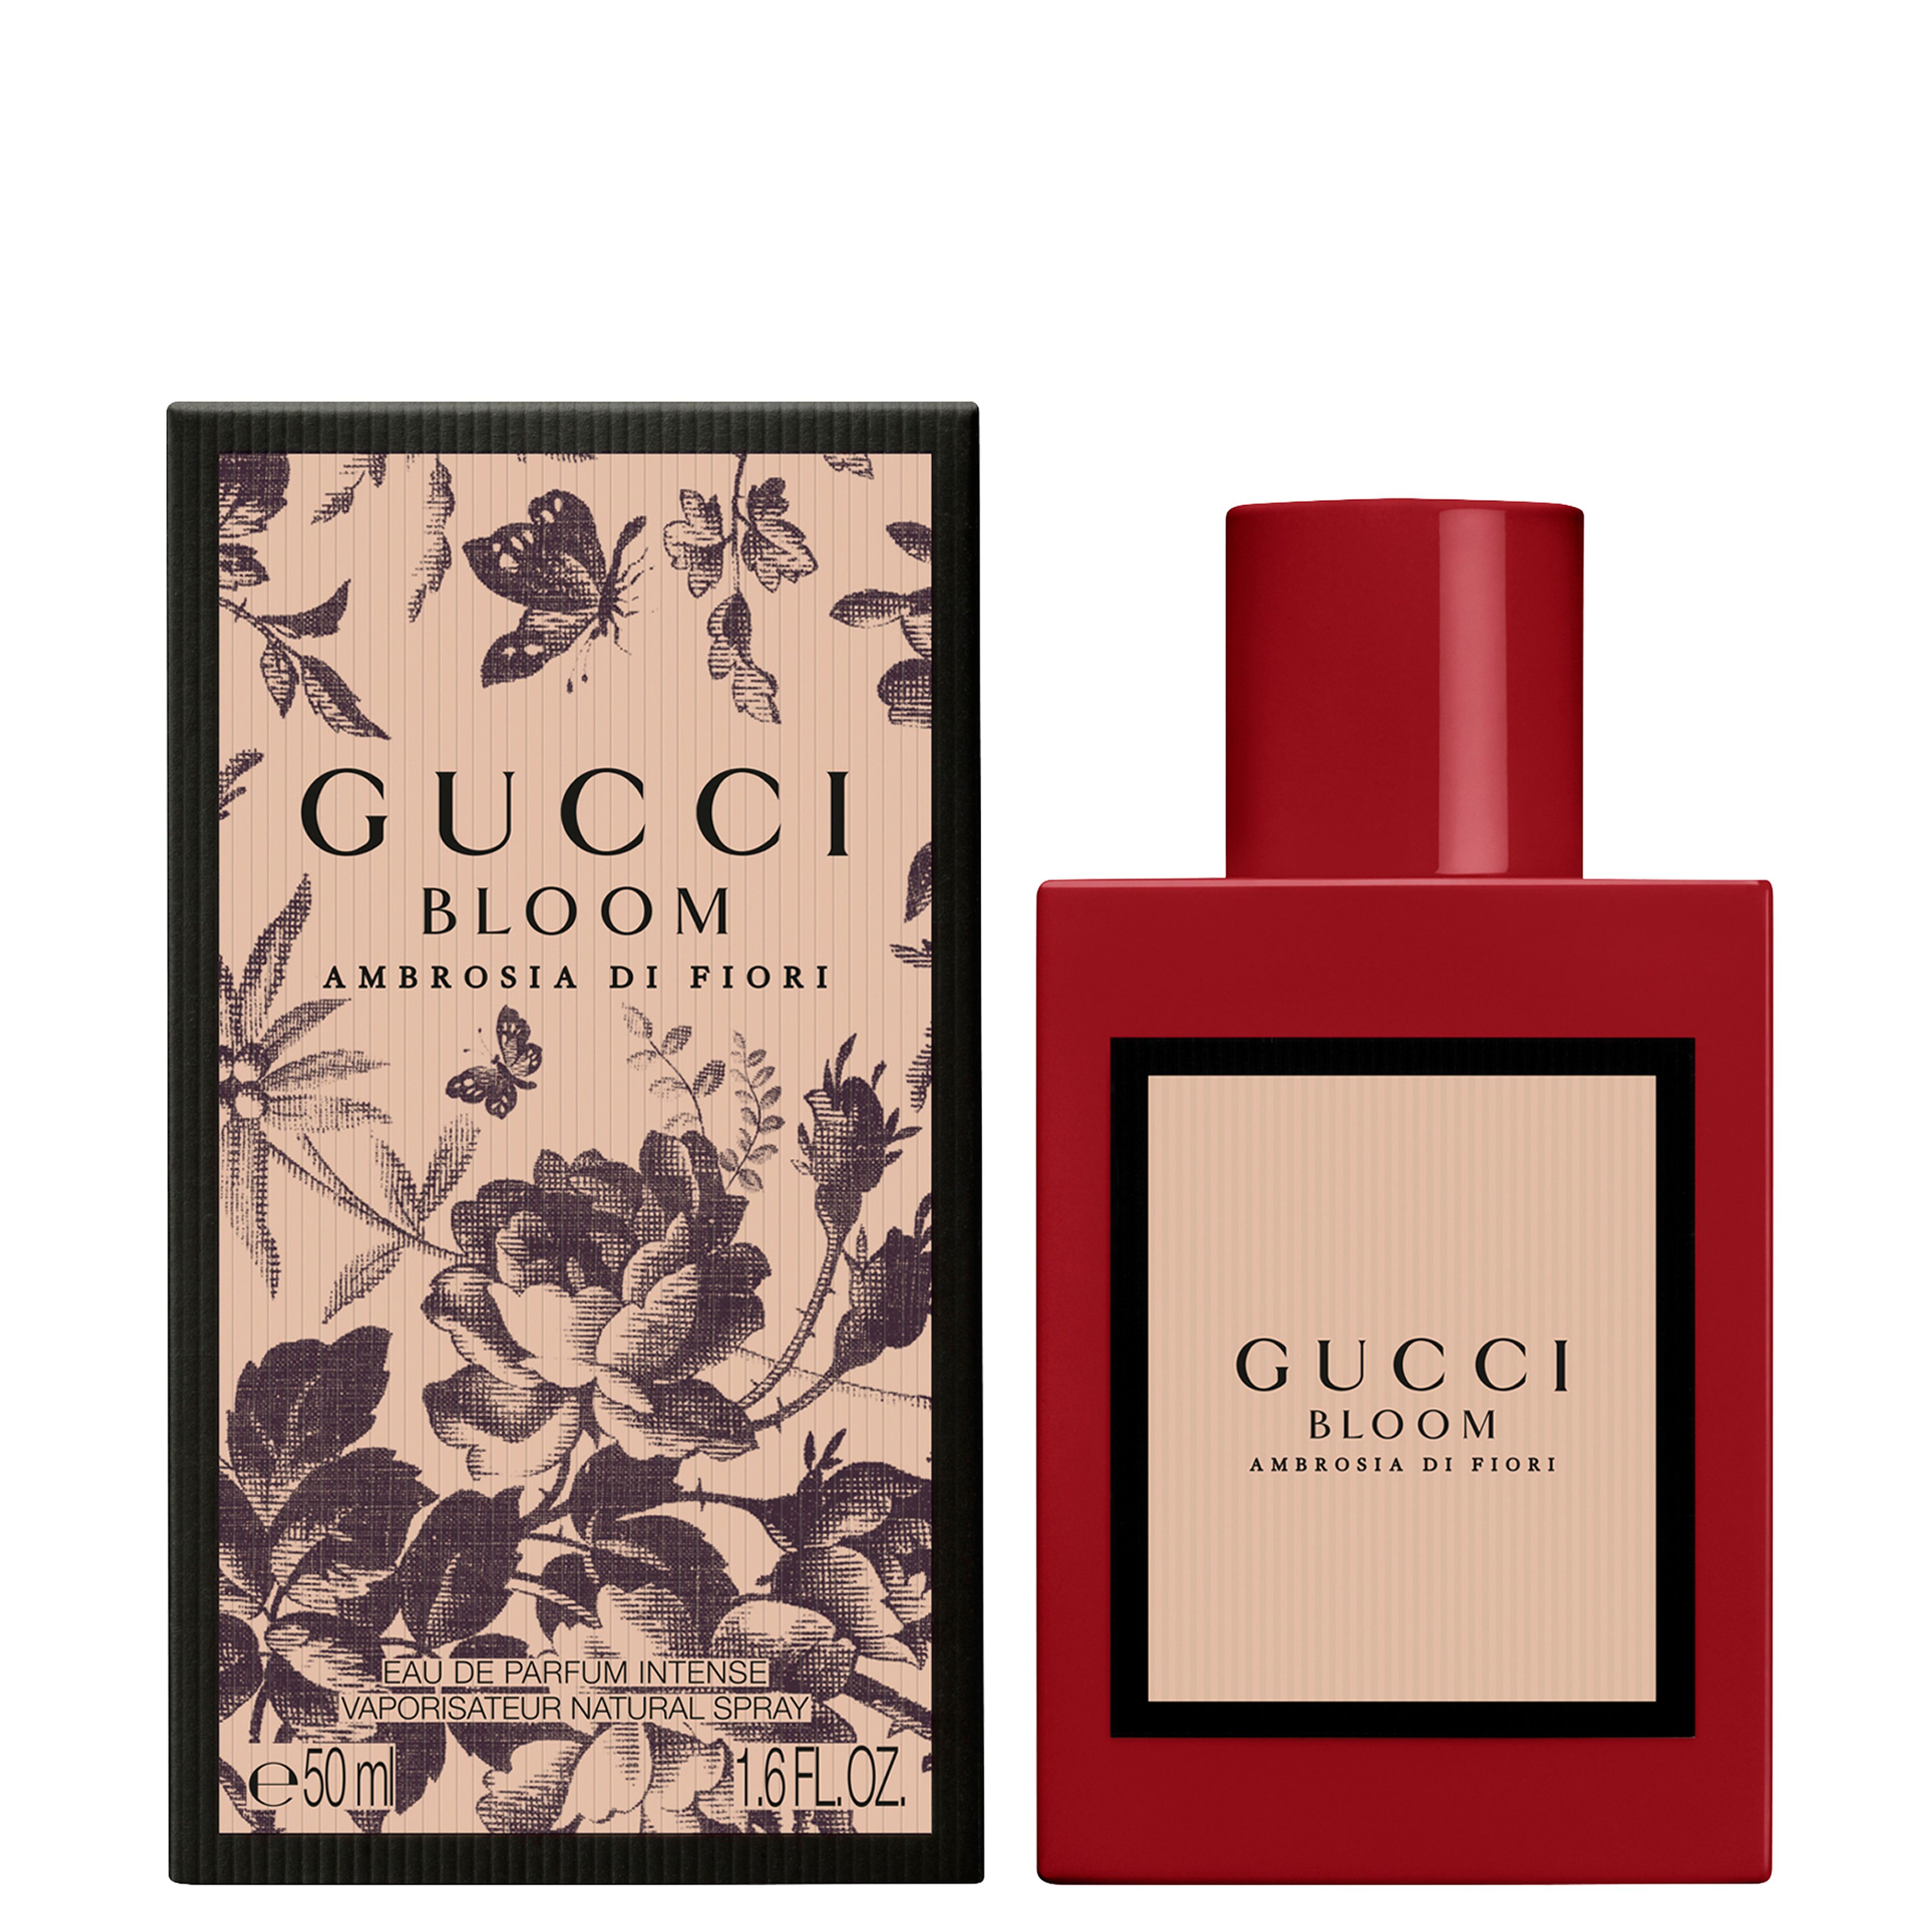 Gucci Gucci Bloom Ambrosia Di Fiori Eau De Parfum Intense For Her 1